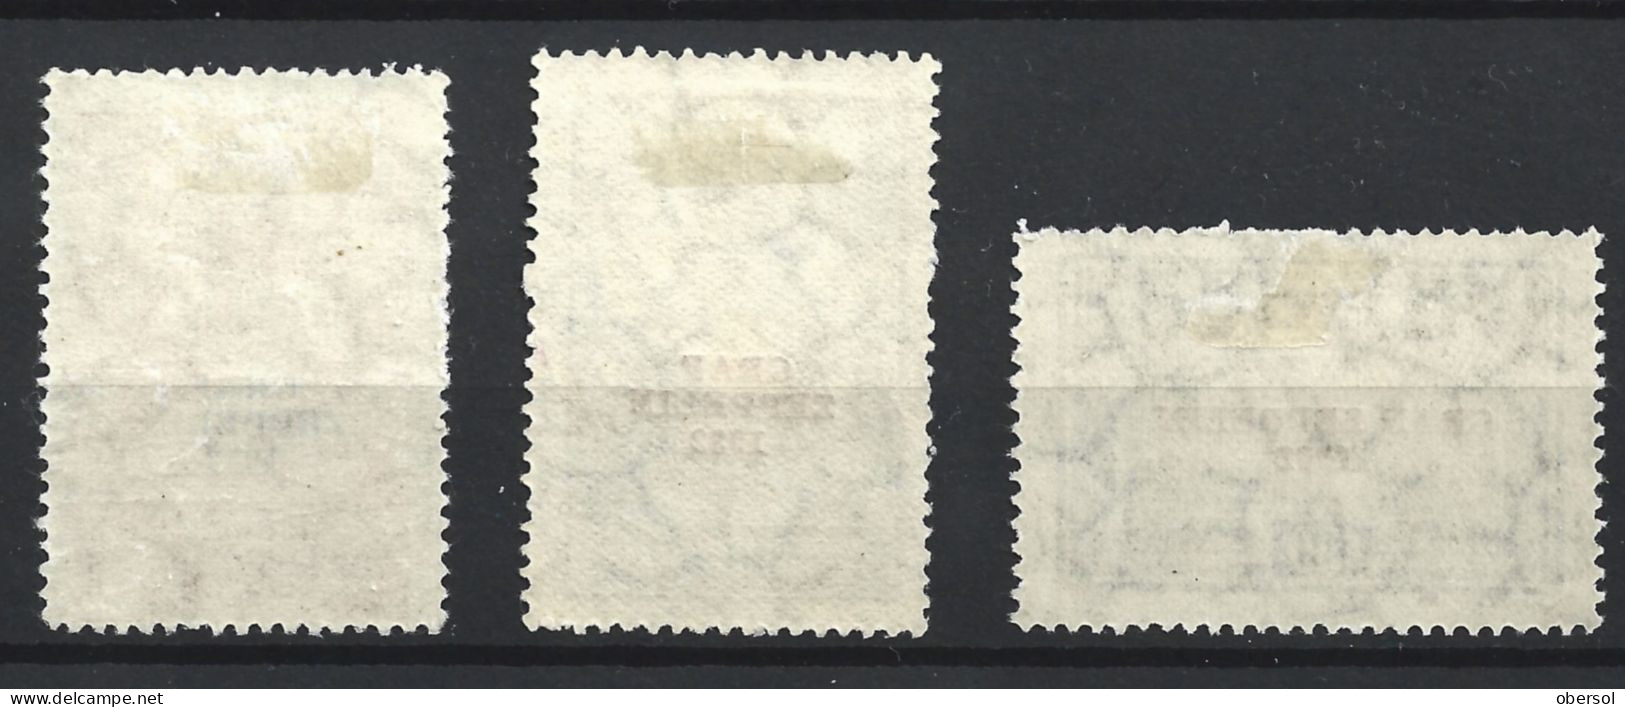 Argentina 1932 Graf Zeppelin Overprint Complete Set MH Stamps ** HCV ** - Nuevos